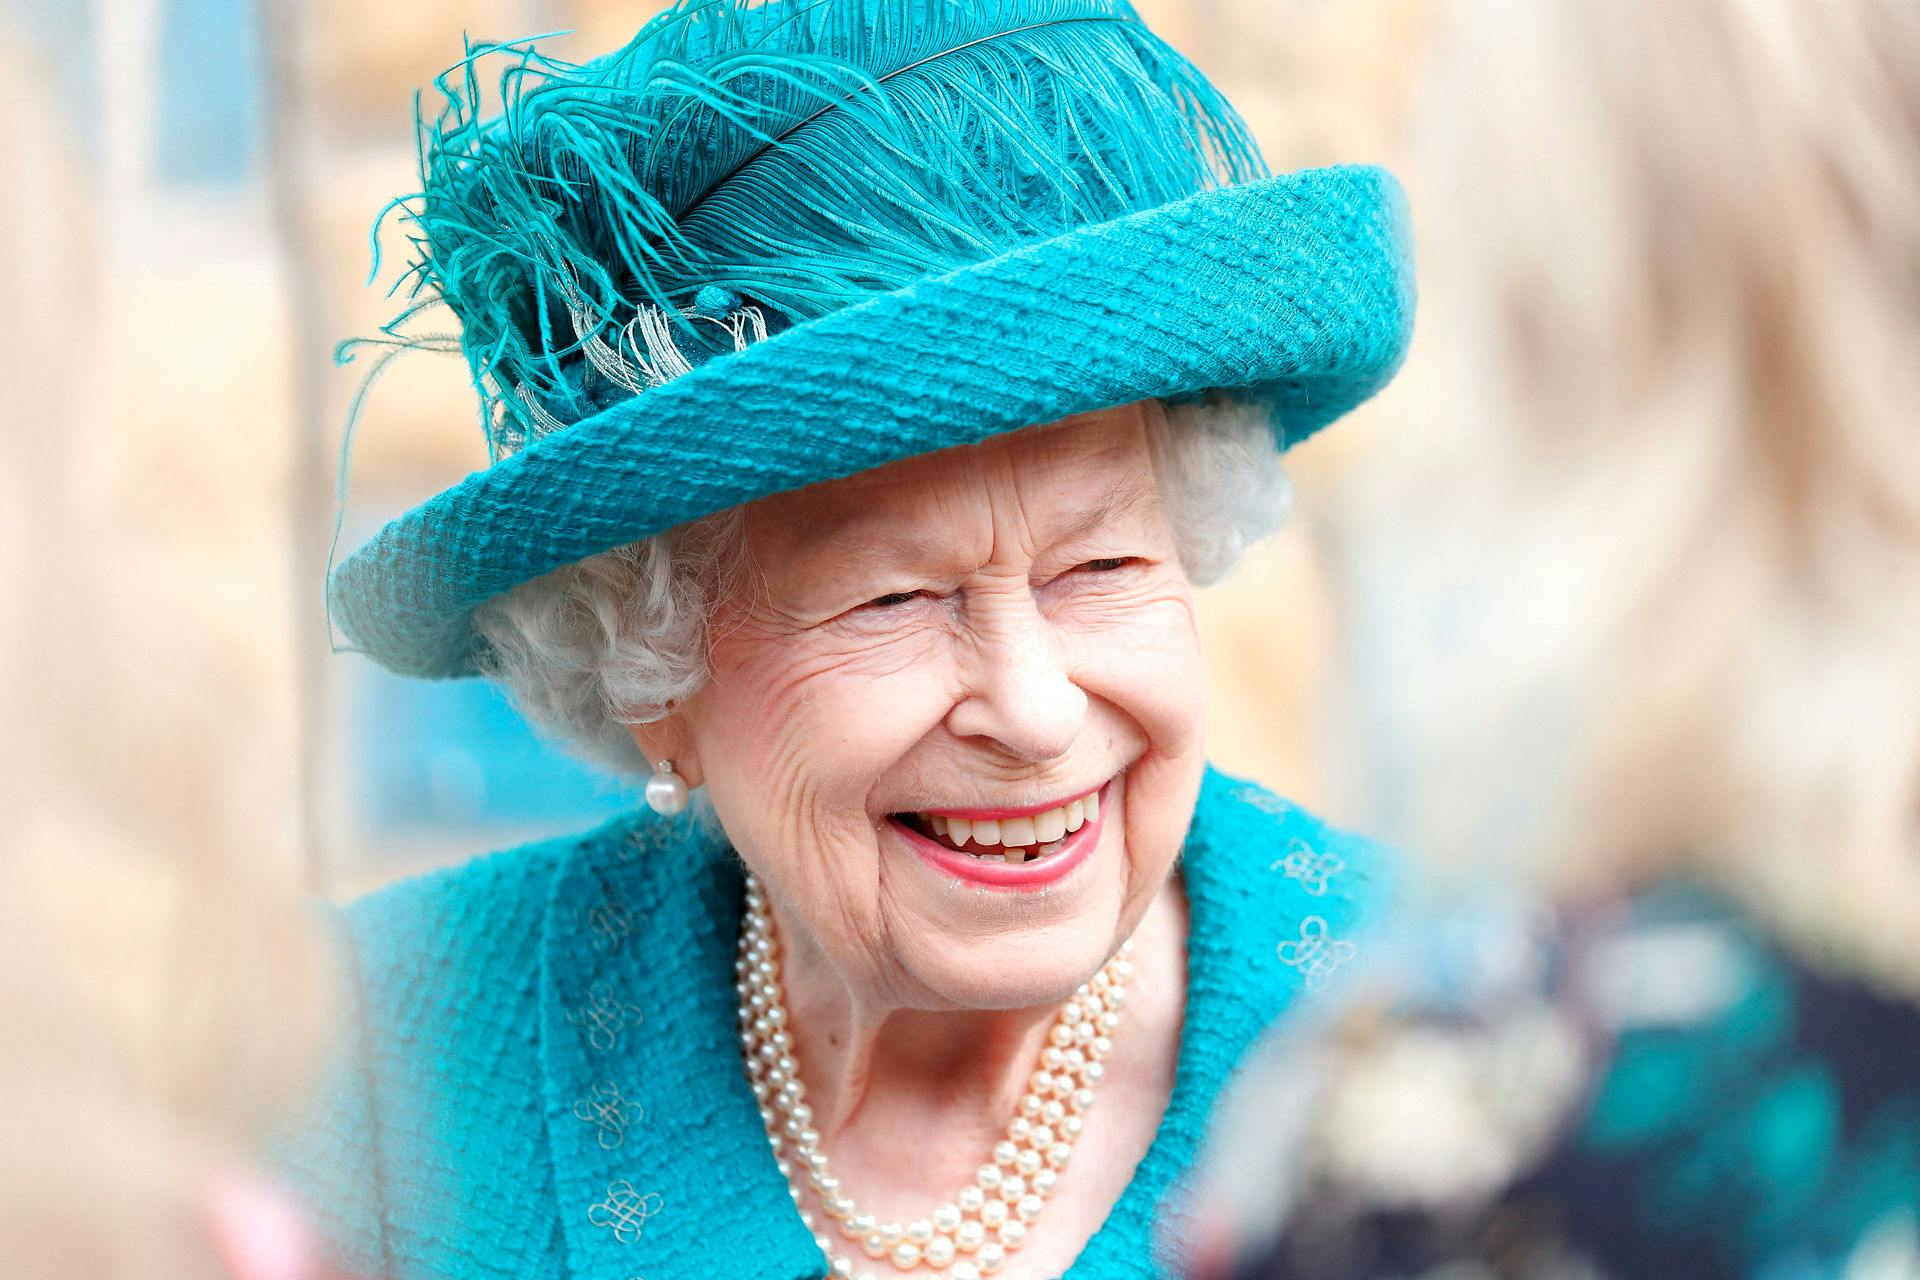 Dronning Elizabeth døde 8. september i en alder af 96 år.
